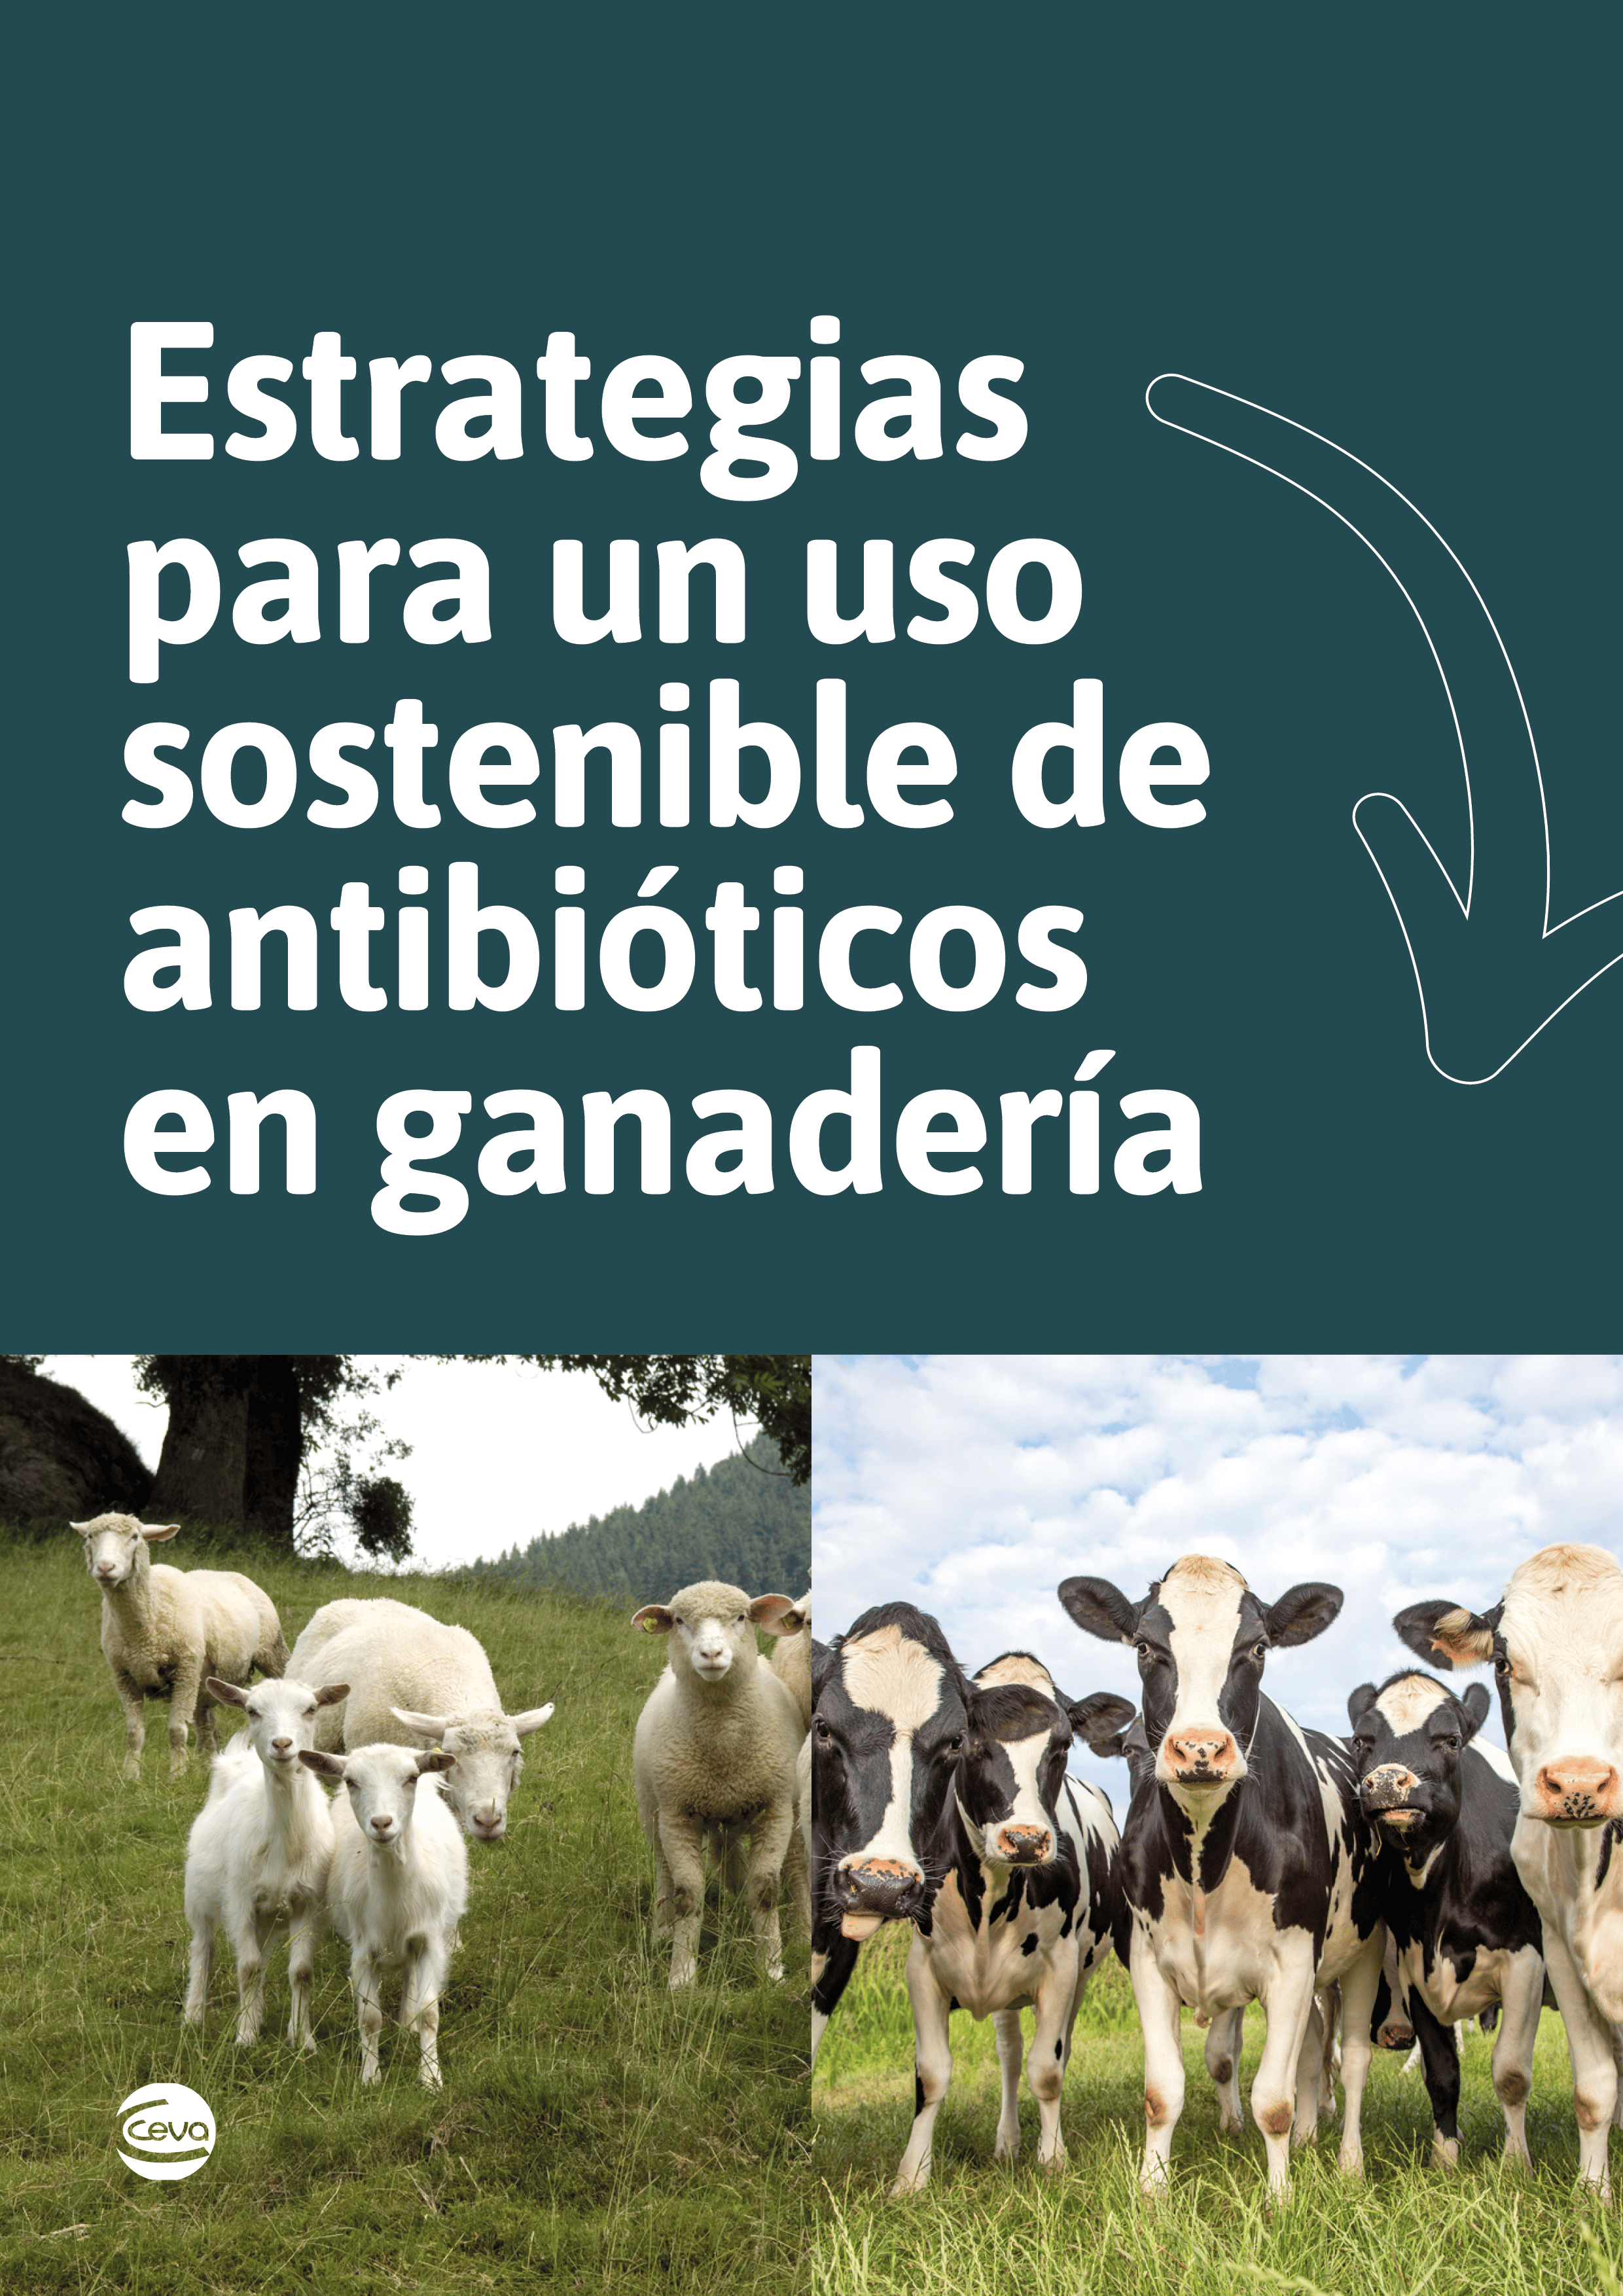 CEV - Estrategias para un uso sostenible de antibioticos en ganadería - Portada2D (2)